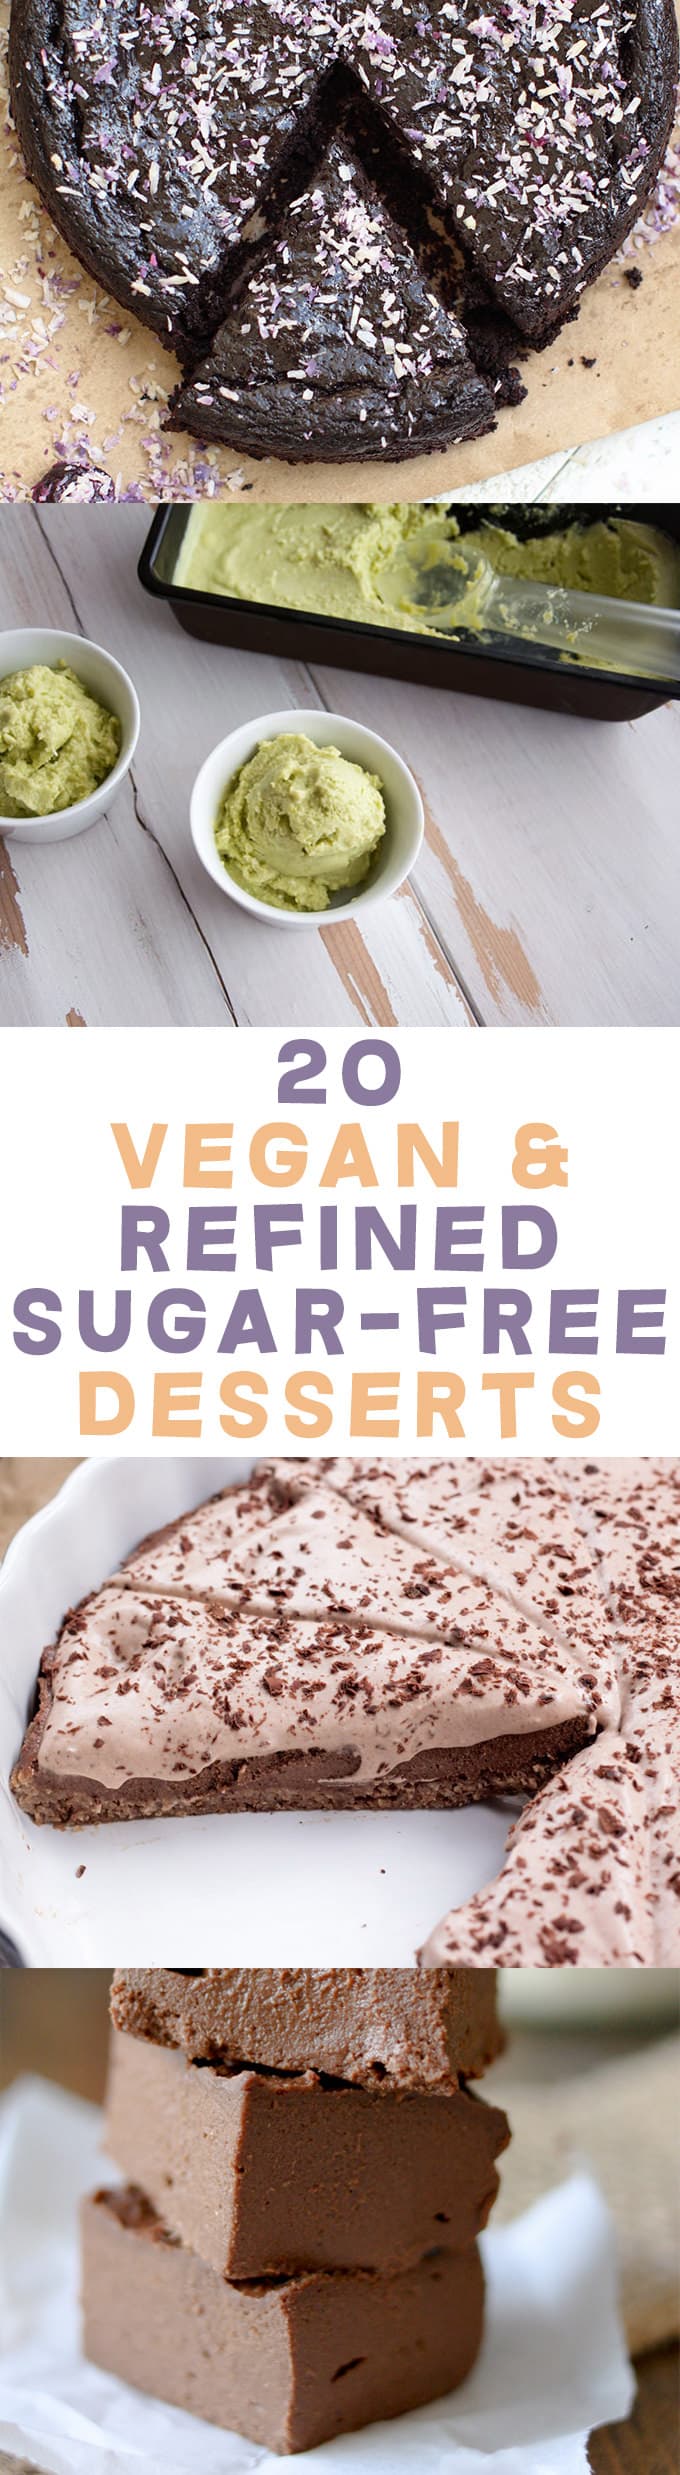 20 Vegan & Refined Sugar-Free Desserts | ElephantasticVegan.com